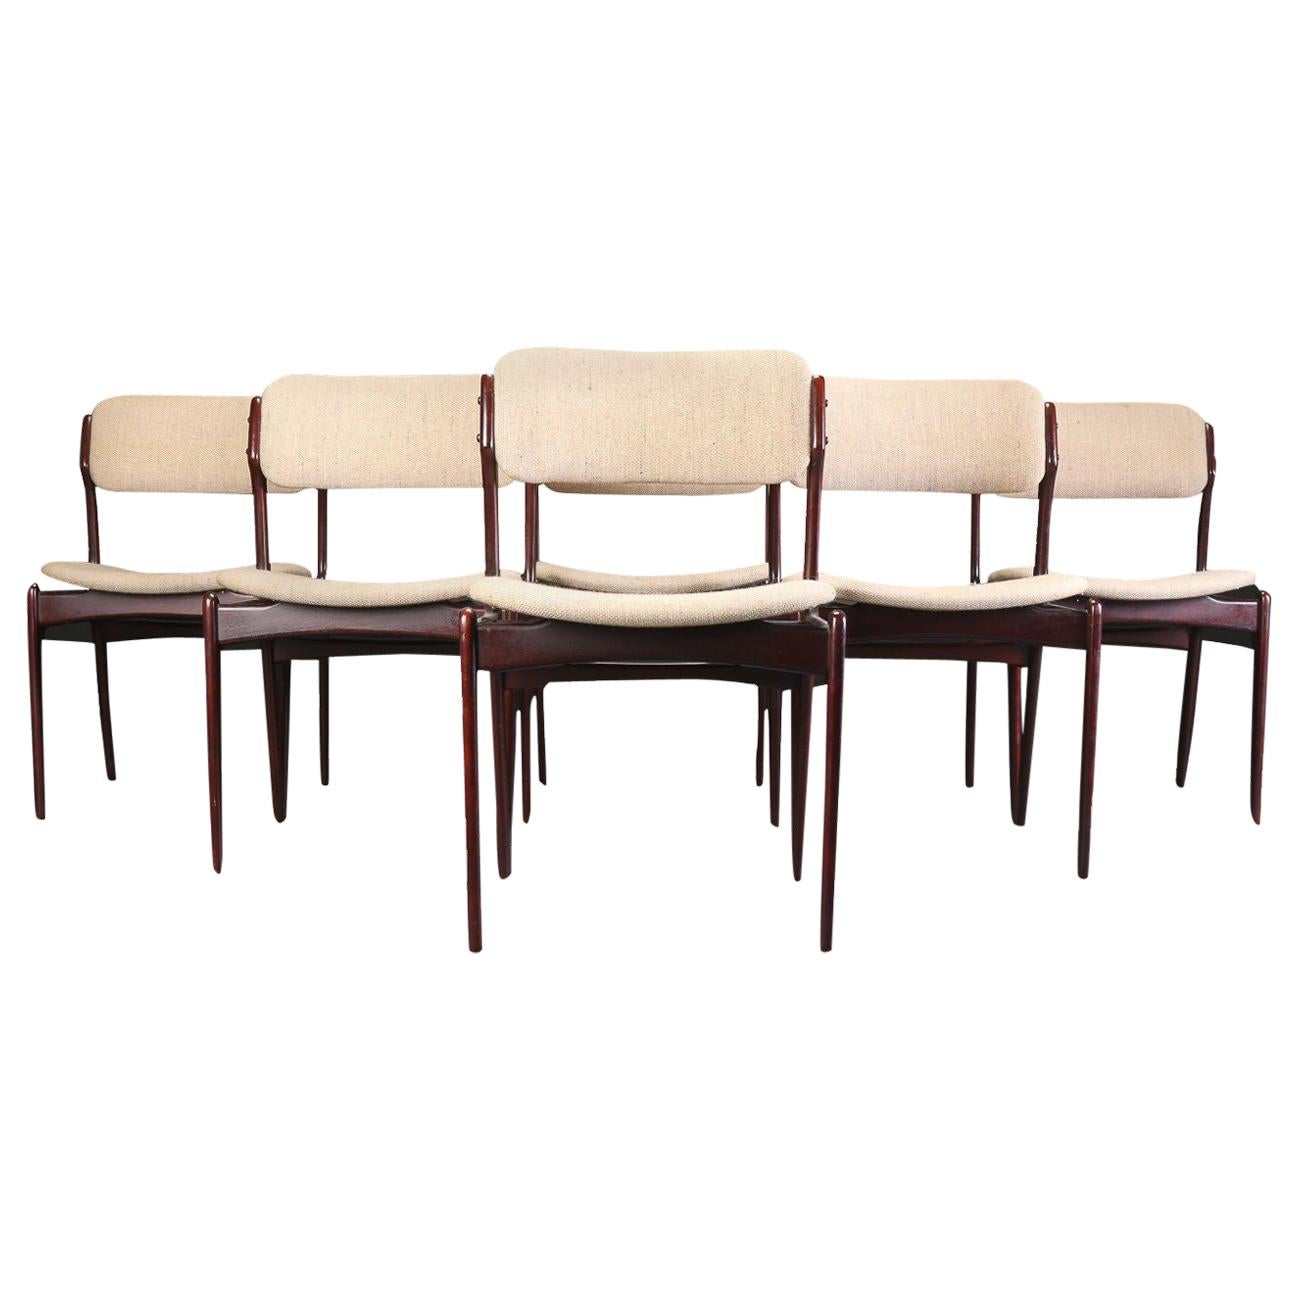 Ensemble de six chaises de salle à manger restaurées Erik Buch en chêne brun clair, retapissage inclus